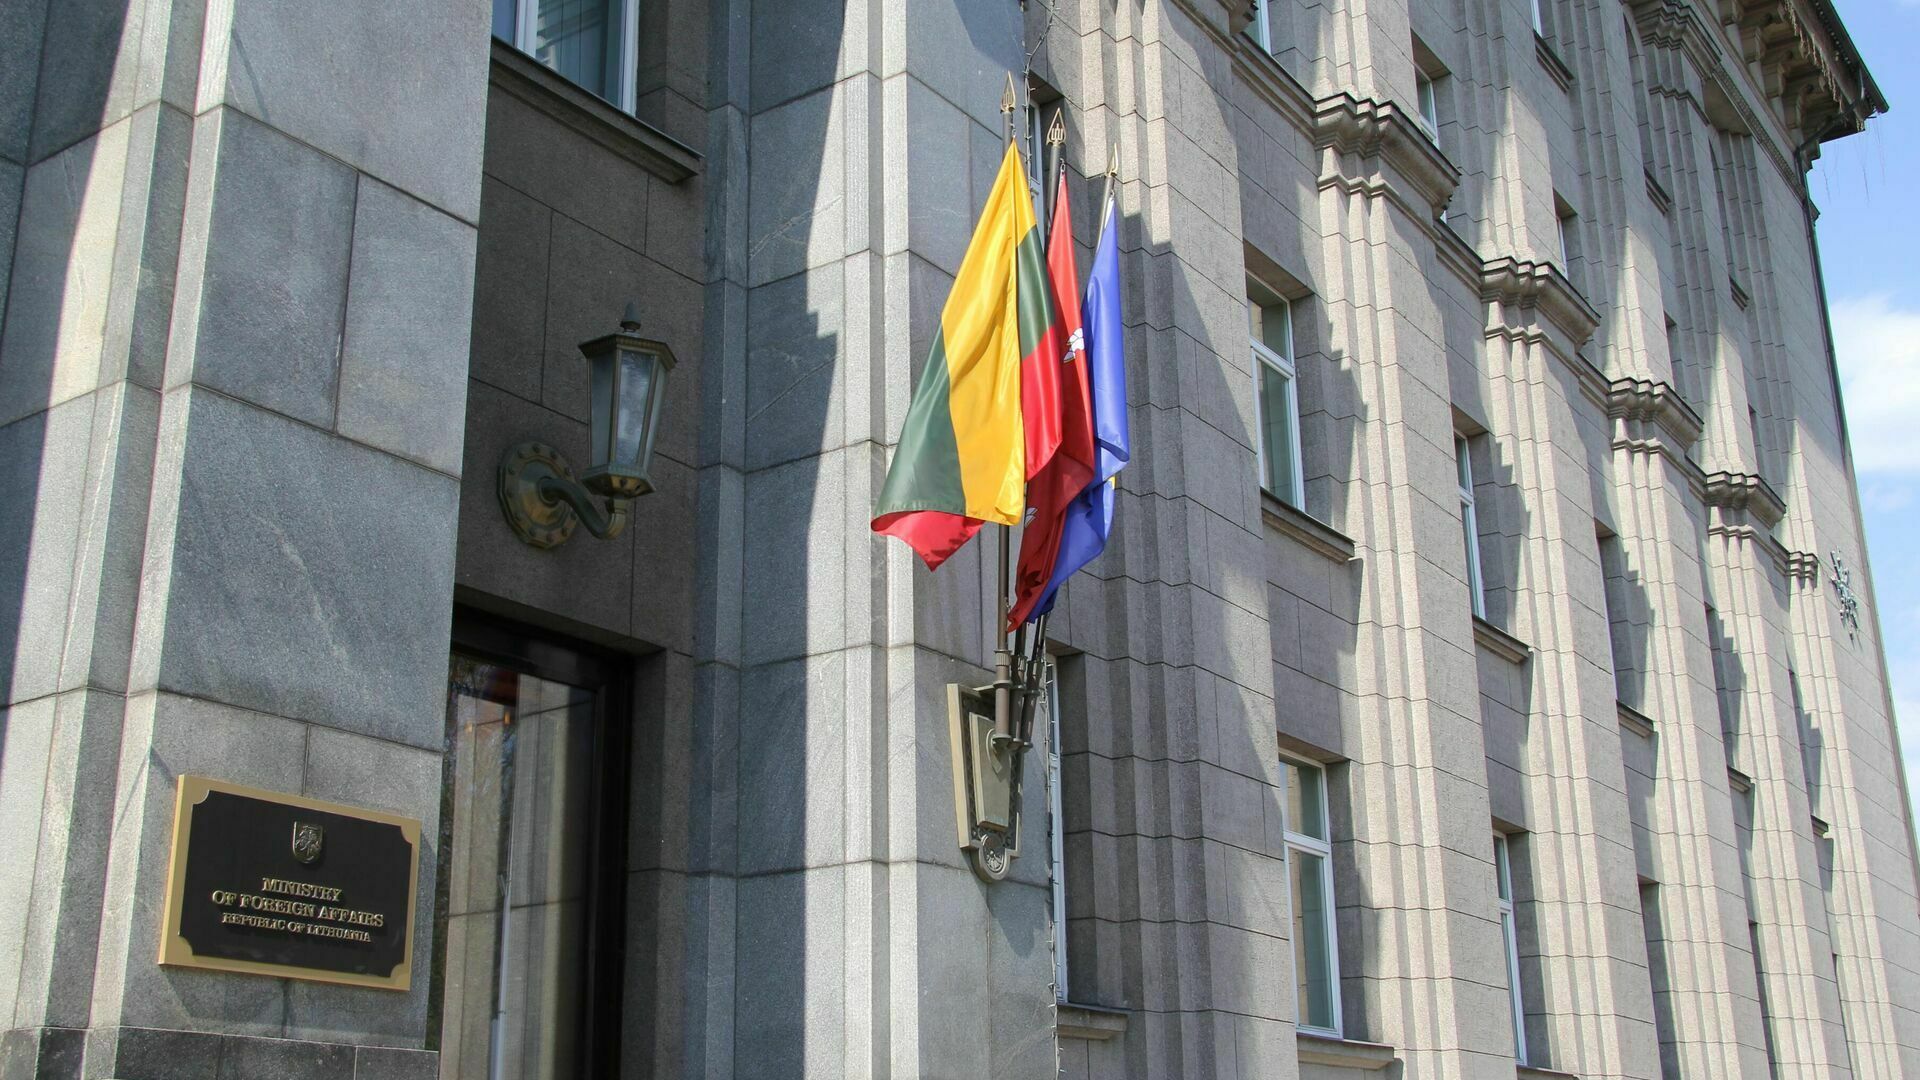 Вандалы облили краской в цвет украинского флага памятник советским воинам в Литве